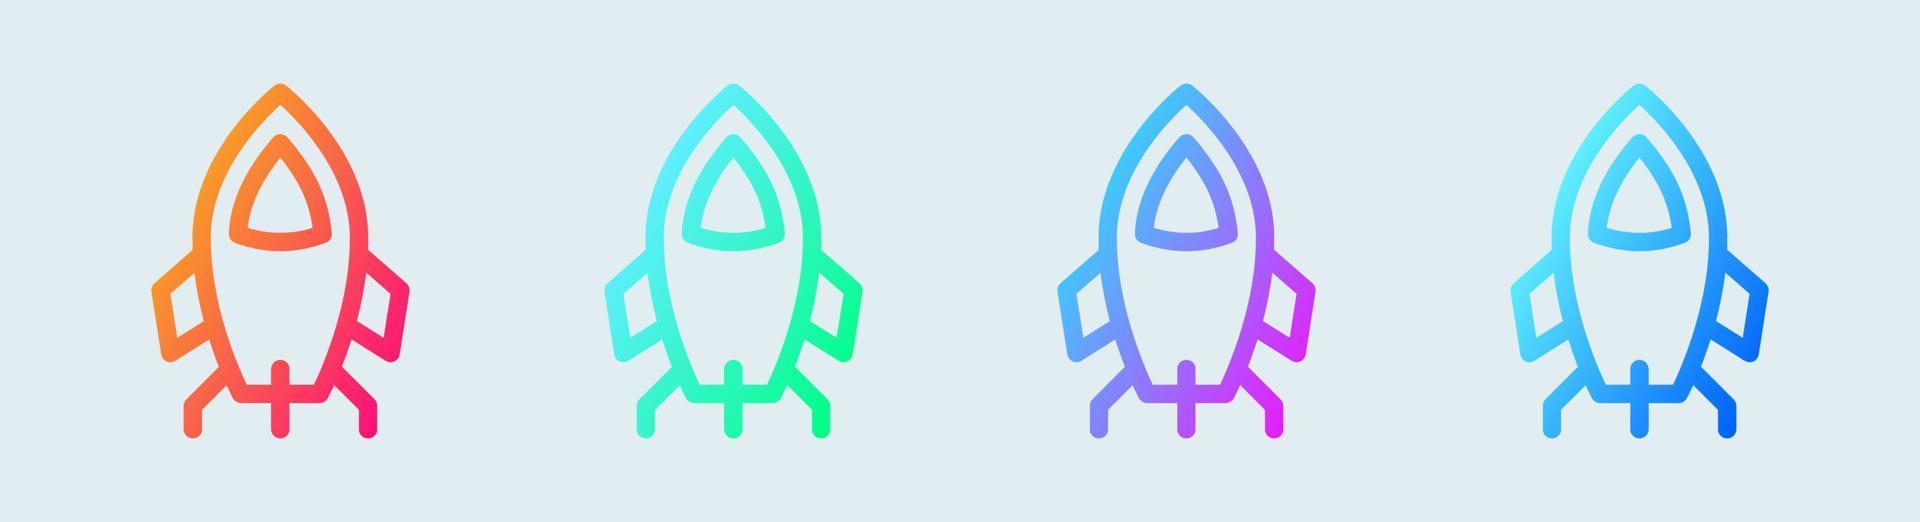 raket lijn icoon in helling kleuren. ruimte schip tekens vector illustratie.